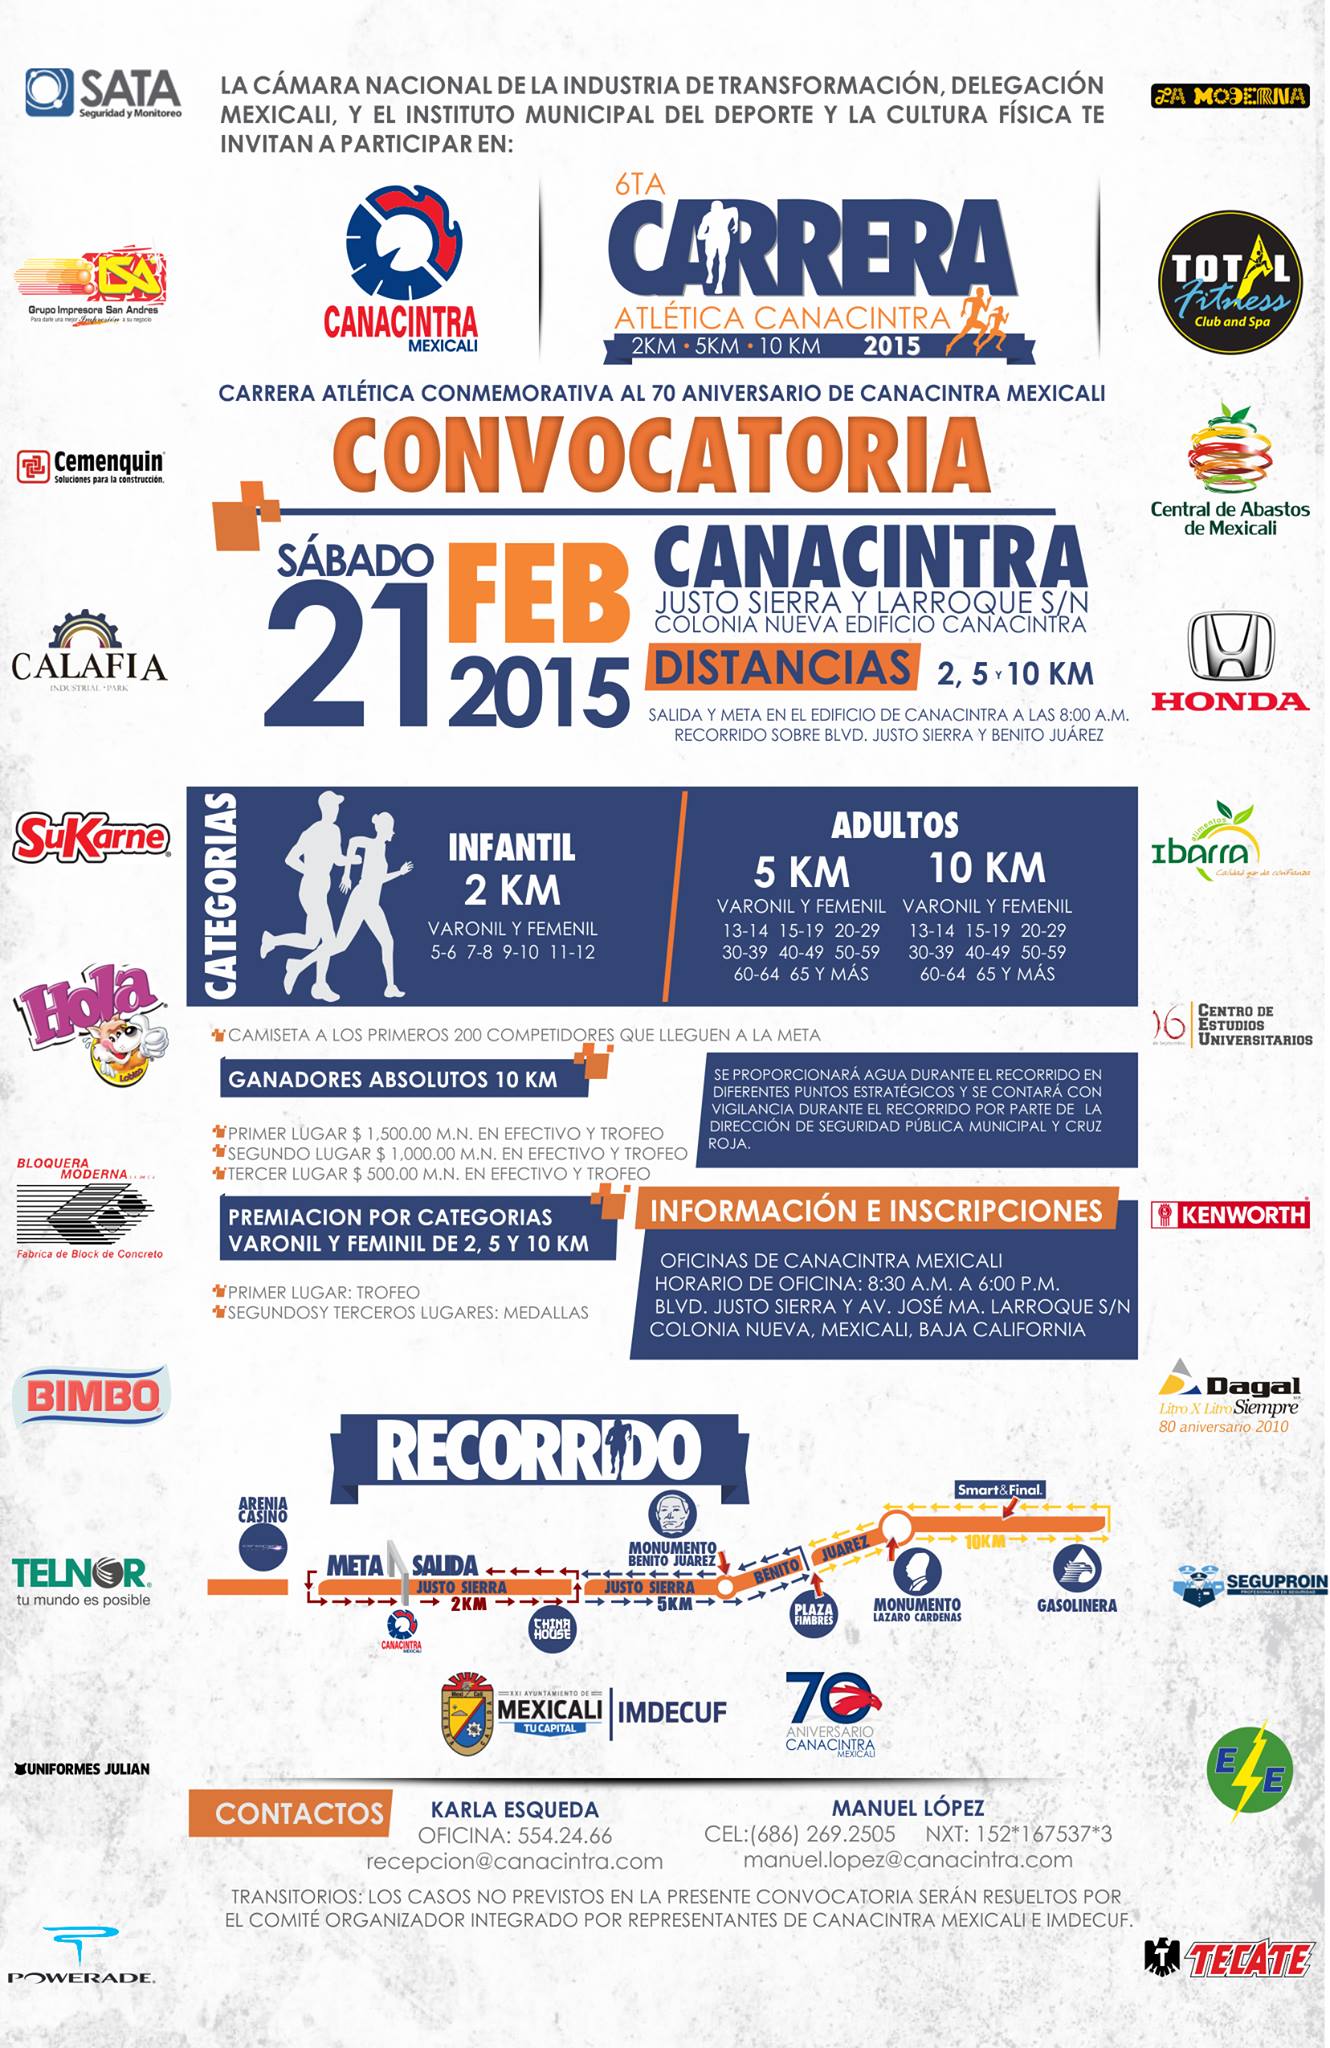 6ta. Carrera Atlética Canacintra 10, 5 y 2 Km. (21/02/2015)